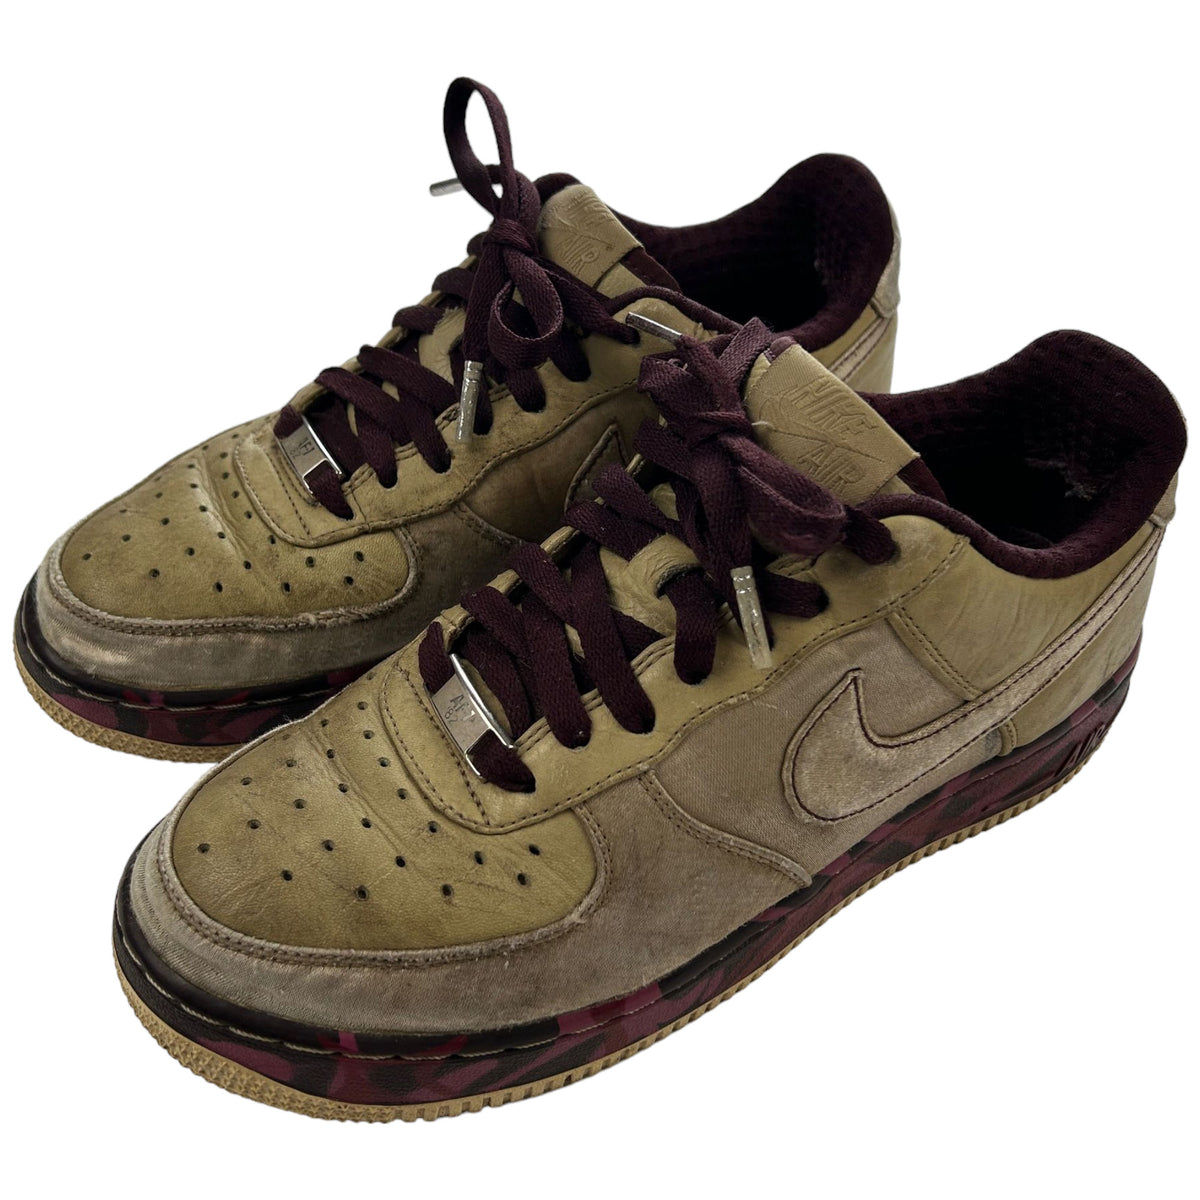 Vintage 2007 Nike AIR Force 1 Premium Tweed Shoes Size 5